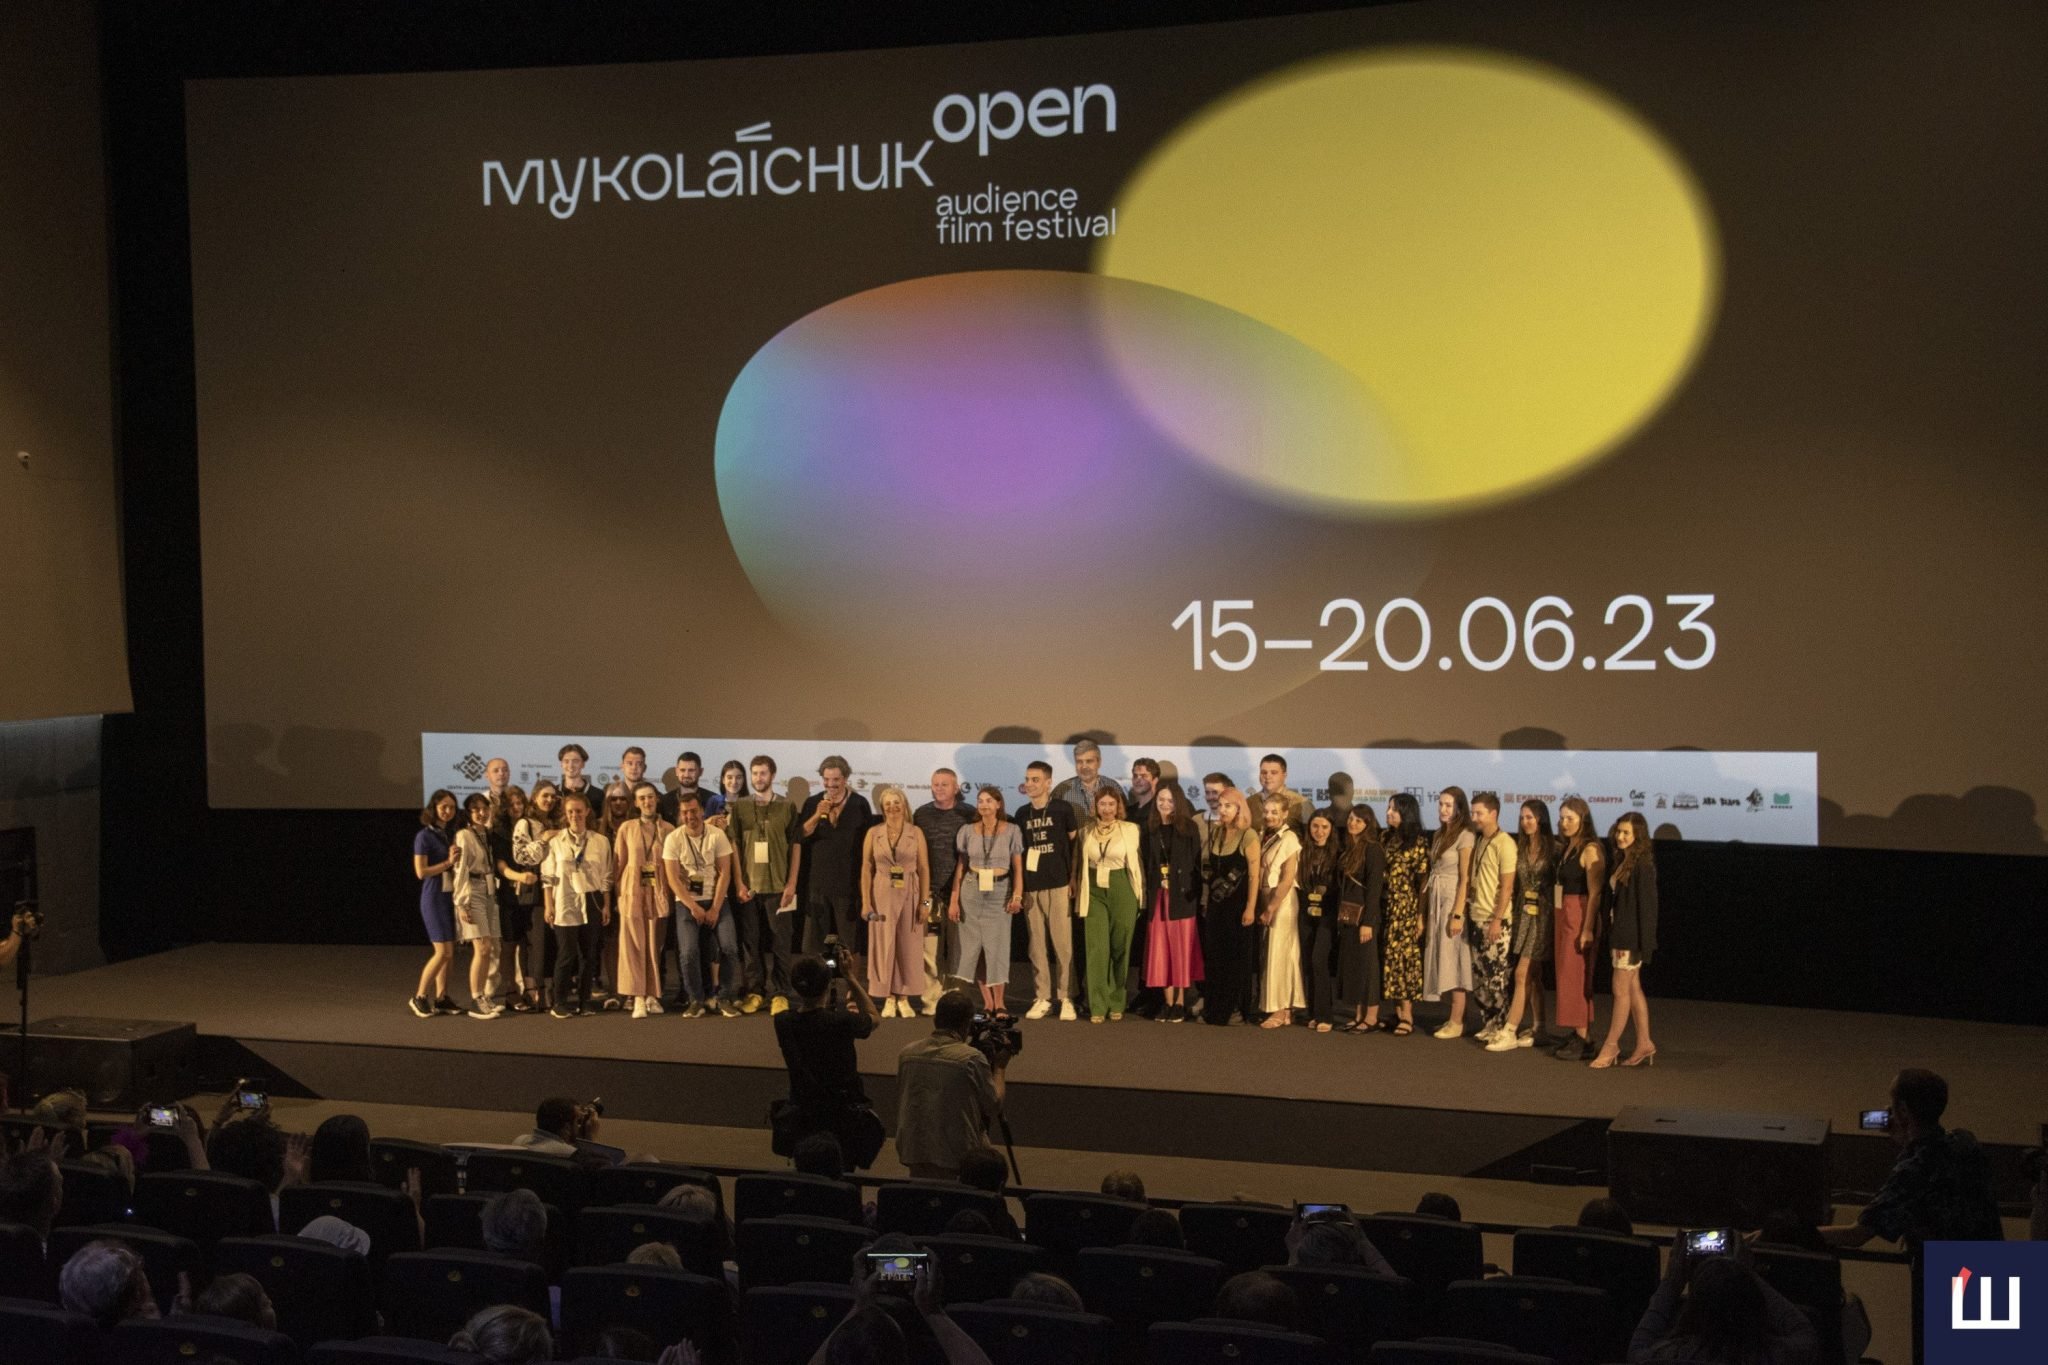 Миколайчук OPEN оголосив учасників національного конкурсу короткометражного кіно